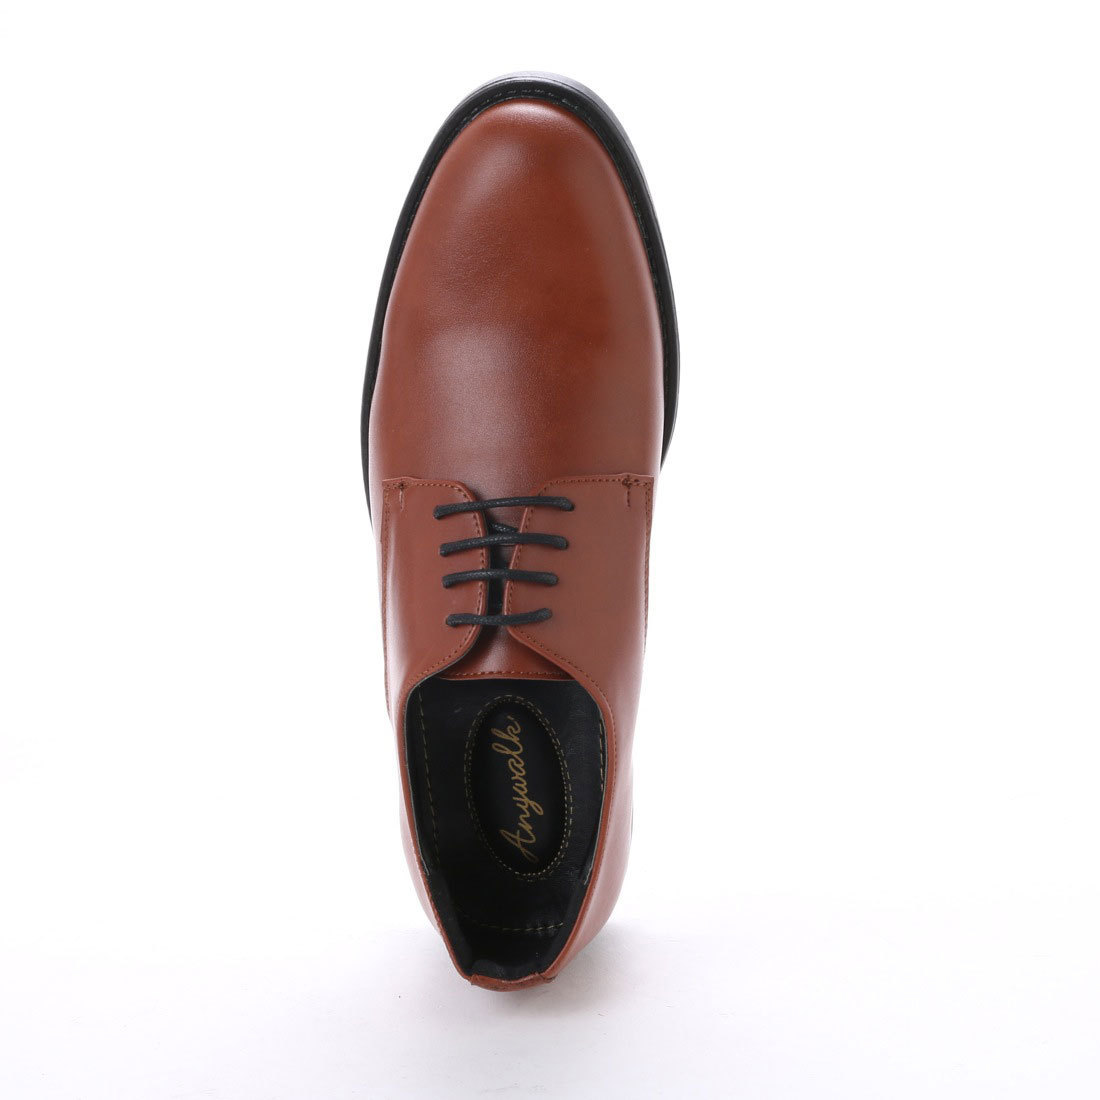 16121 アウトレット ビジネスシューズ 25.5cm ブラウン レースアップ メンズ 紳士靴